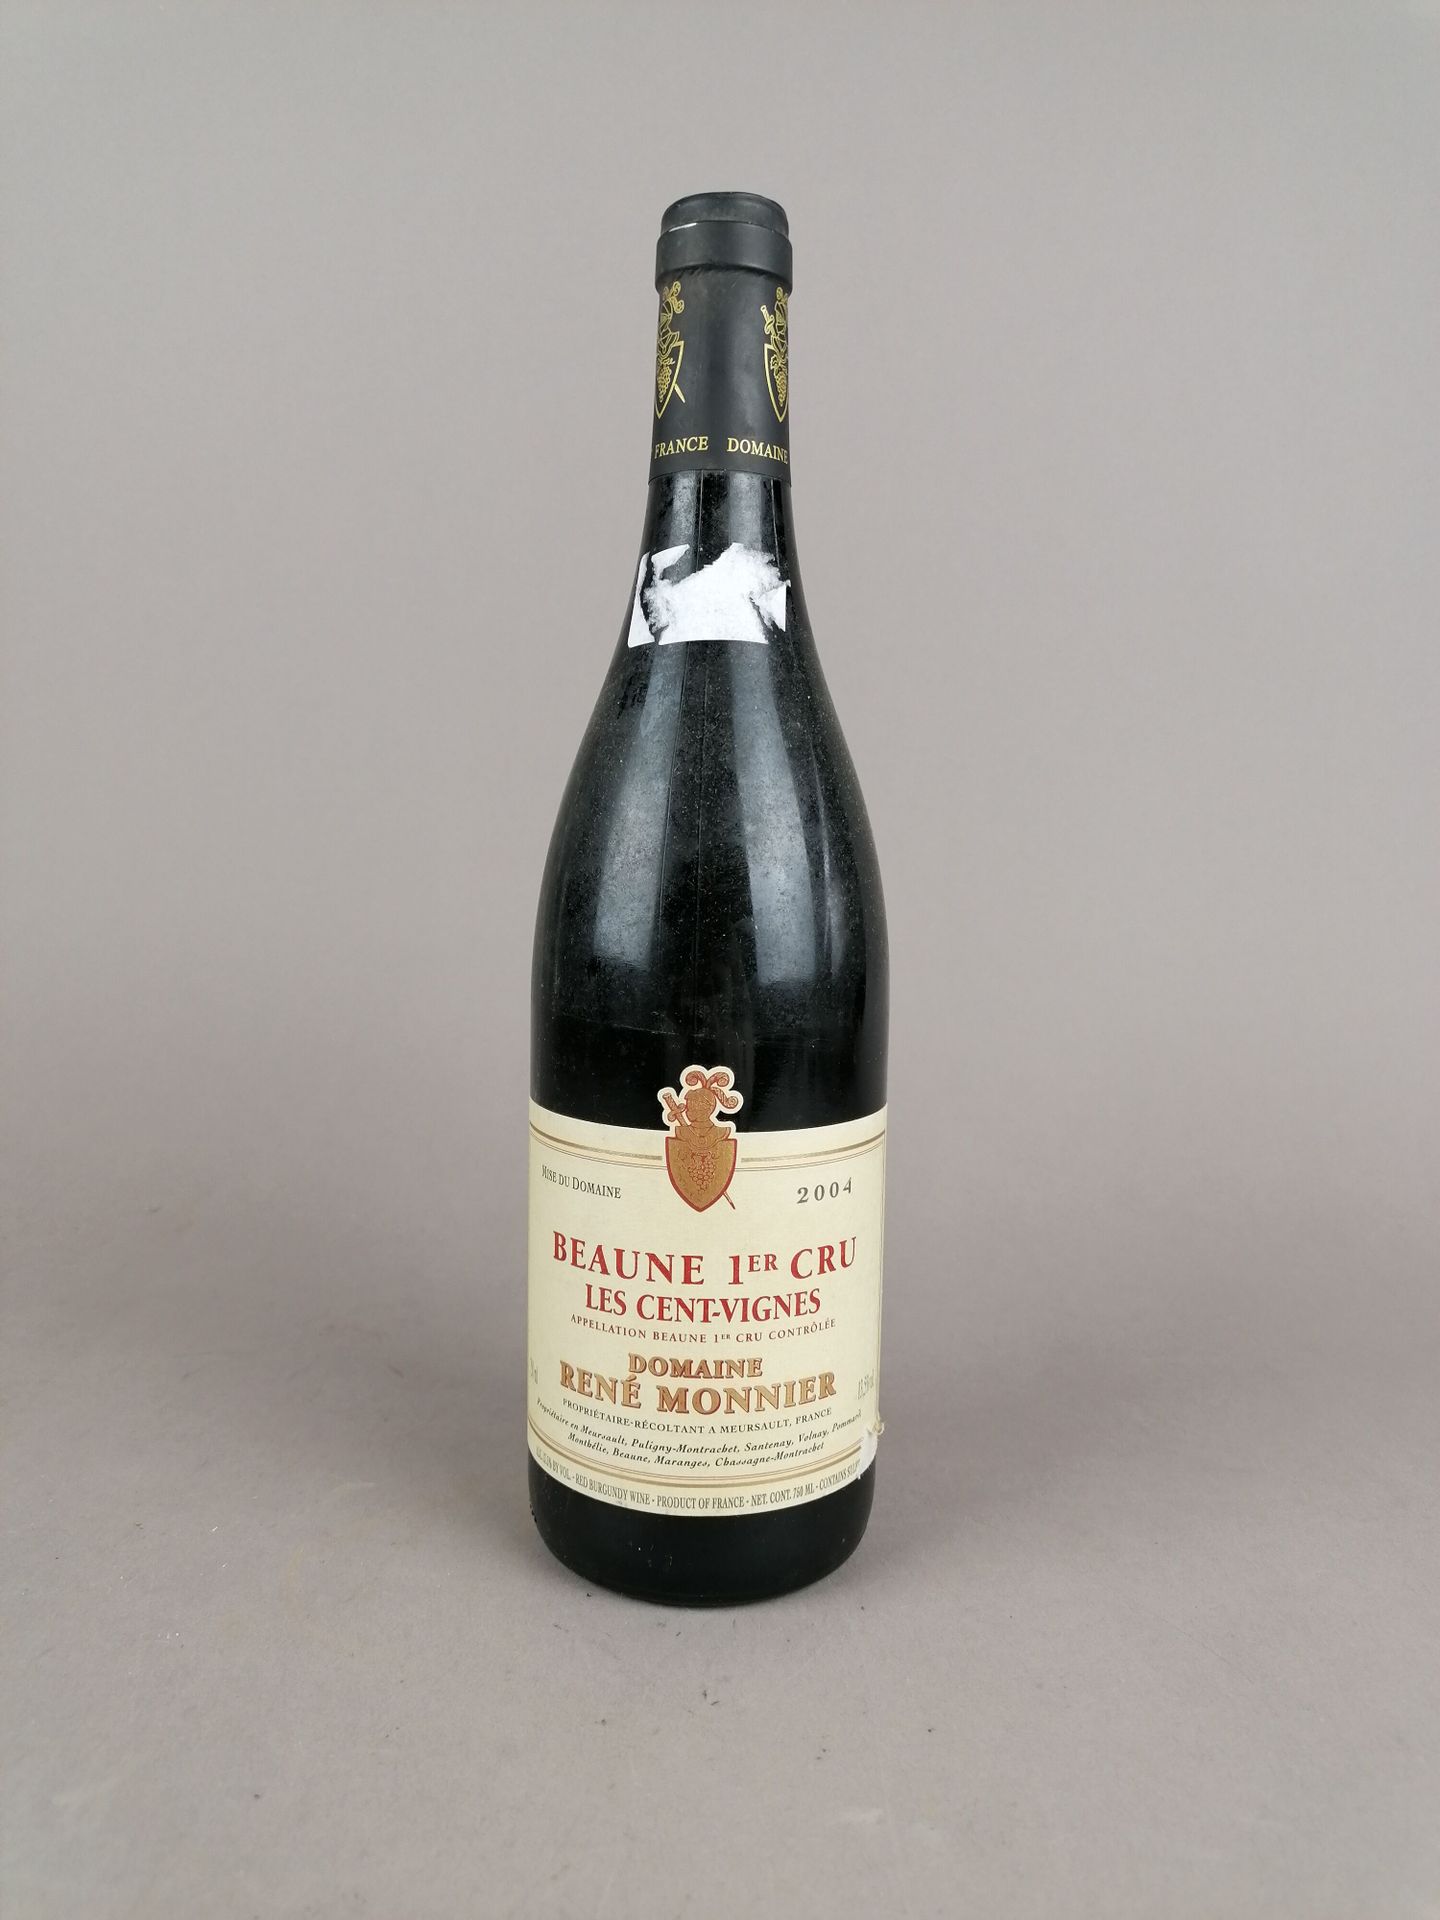 Null 博纳一级酒庄Les Cent-Vignes 2004 Domaine René Monnier 1瓶